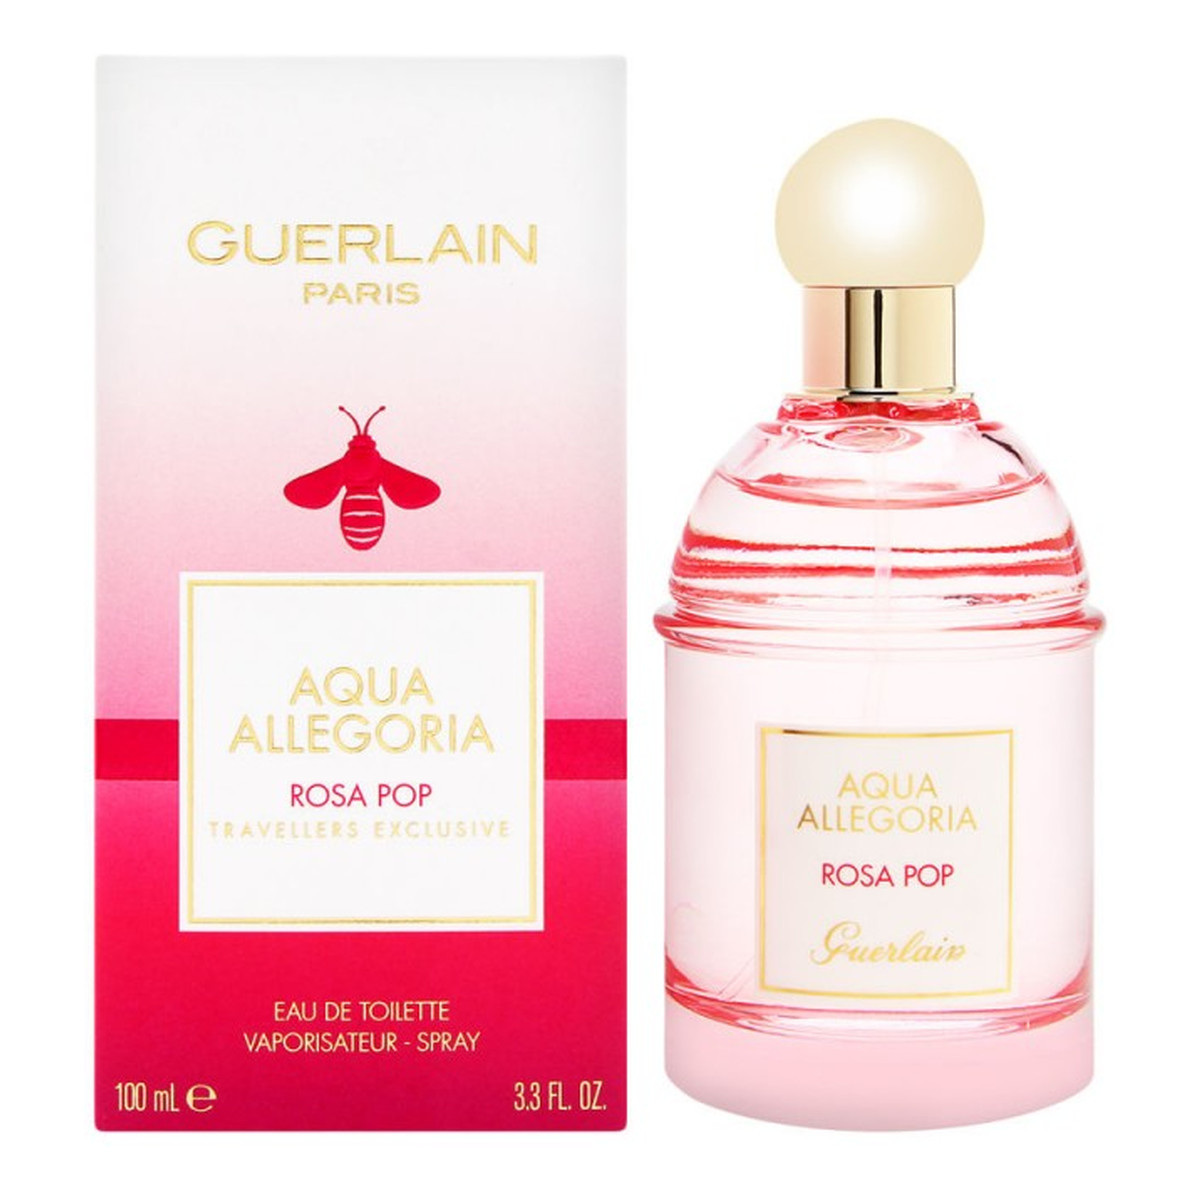 Guerlain Aqua Allegoria Rosa Pop Woda toaletowa spray 100ml